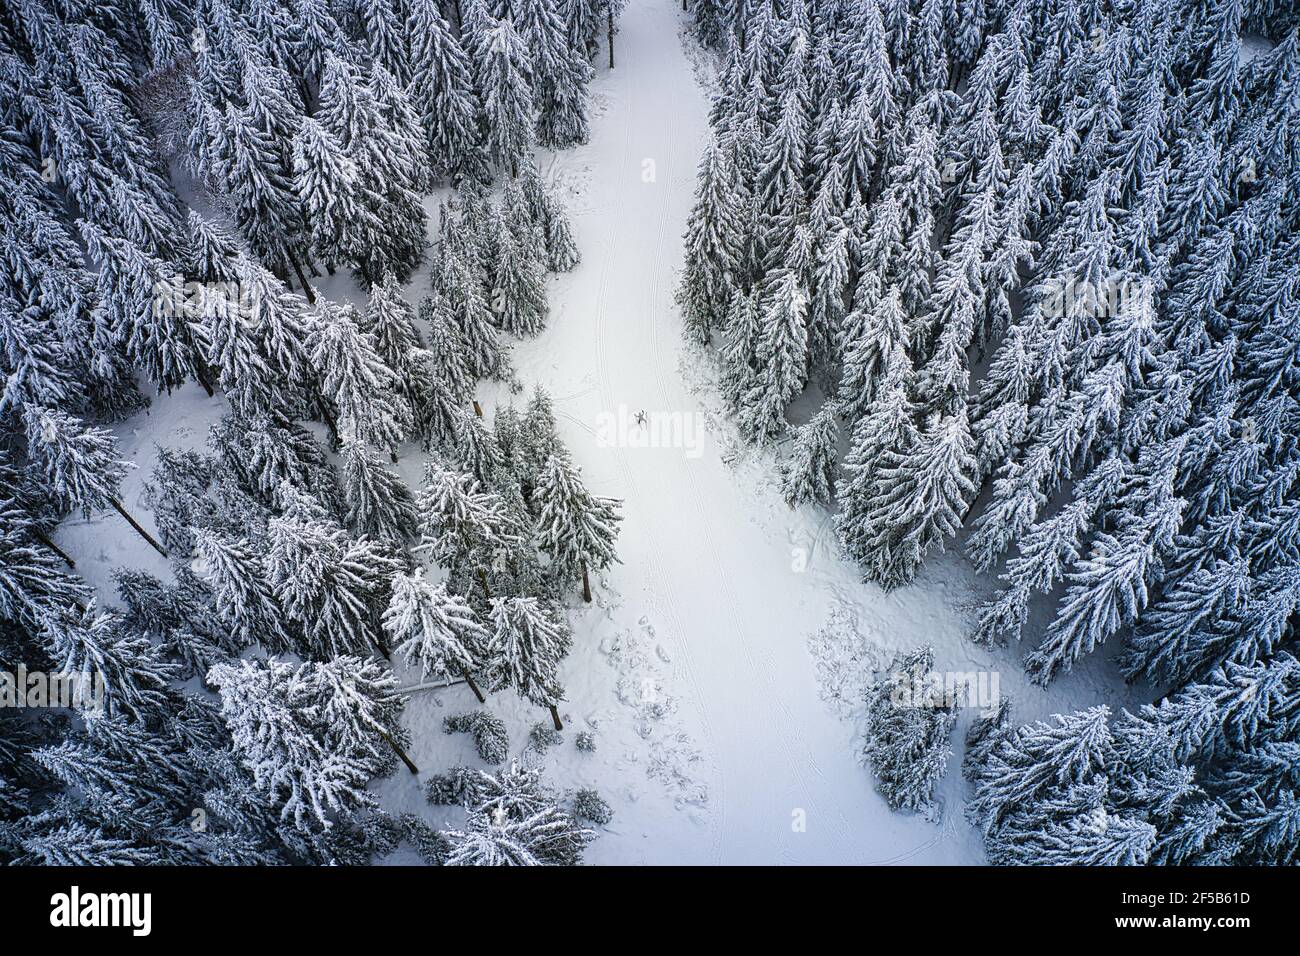 Luftaufnahme von Skilangläufern auf dem winterlichen Hohen Meißner Foto Stock